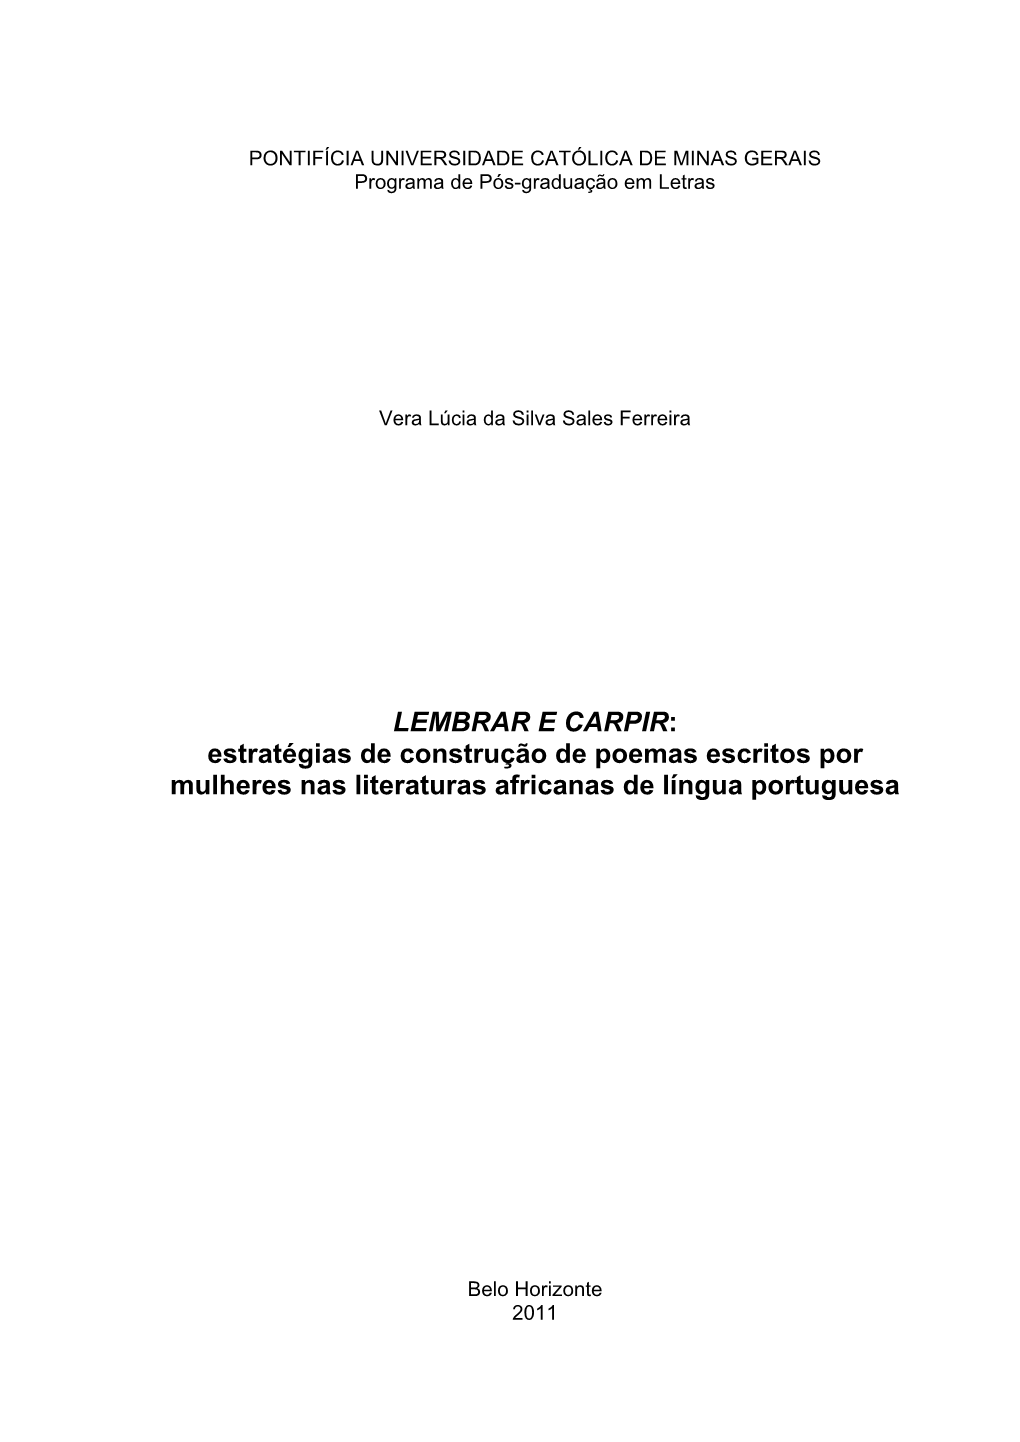 LEMBRAR E CARPIR: Estratégias De Construção De Poemas Escritos Por Mulheres Nas Literaturas Africanas De Língua Portuguesa